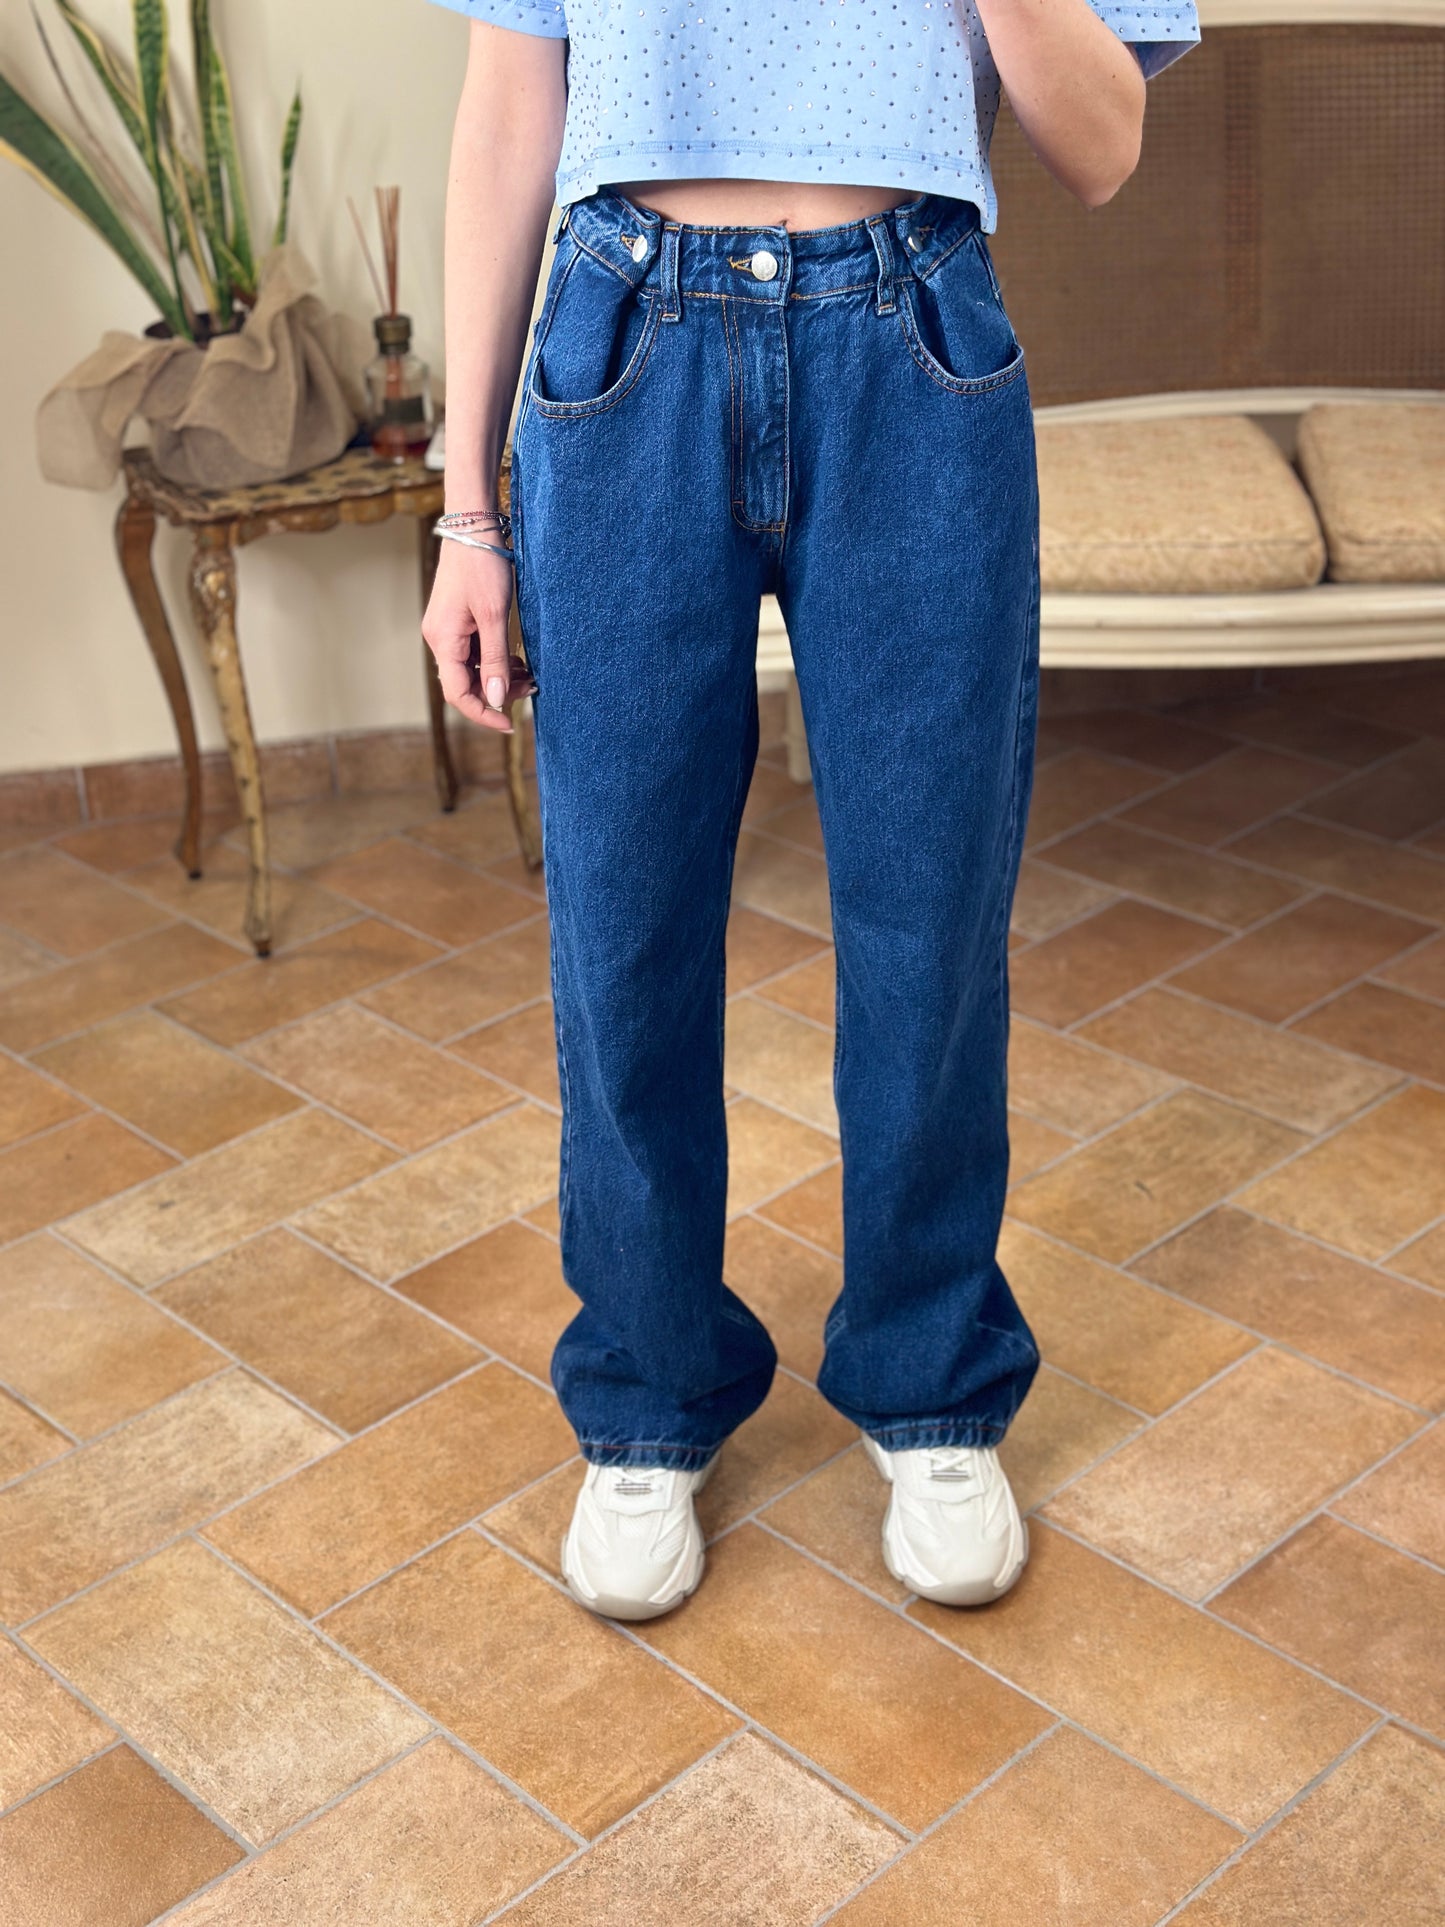 UNI mè jeans con pences (removibili)